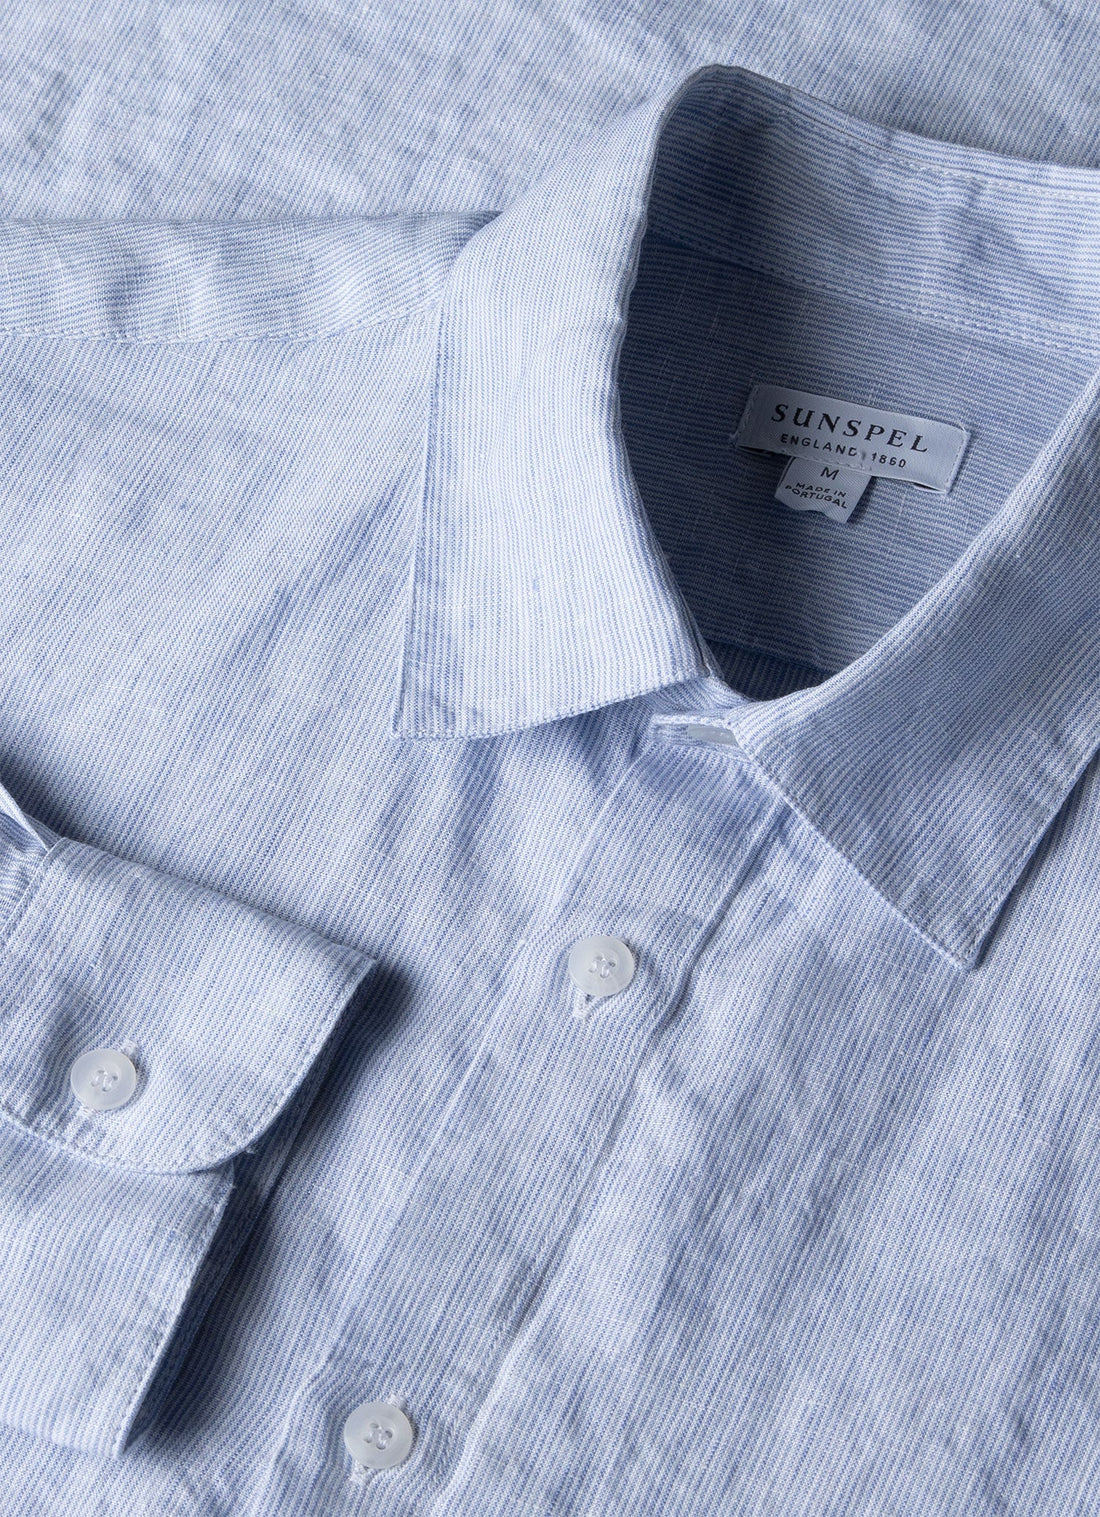 Men's Linen Shirt in Blue/White